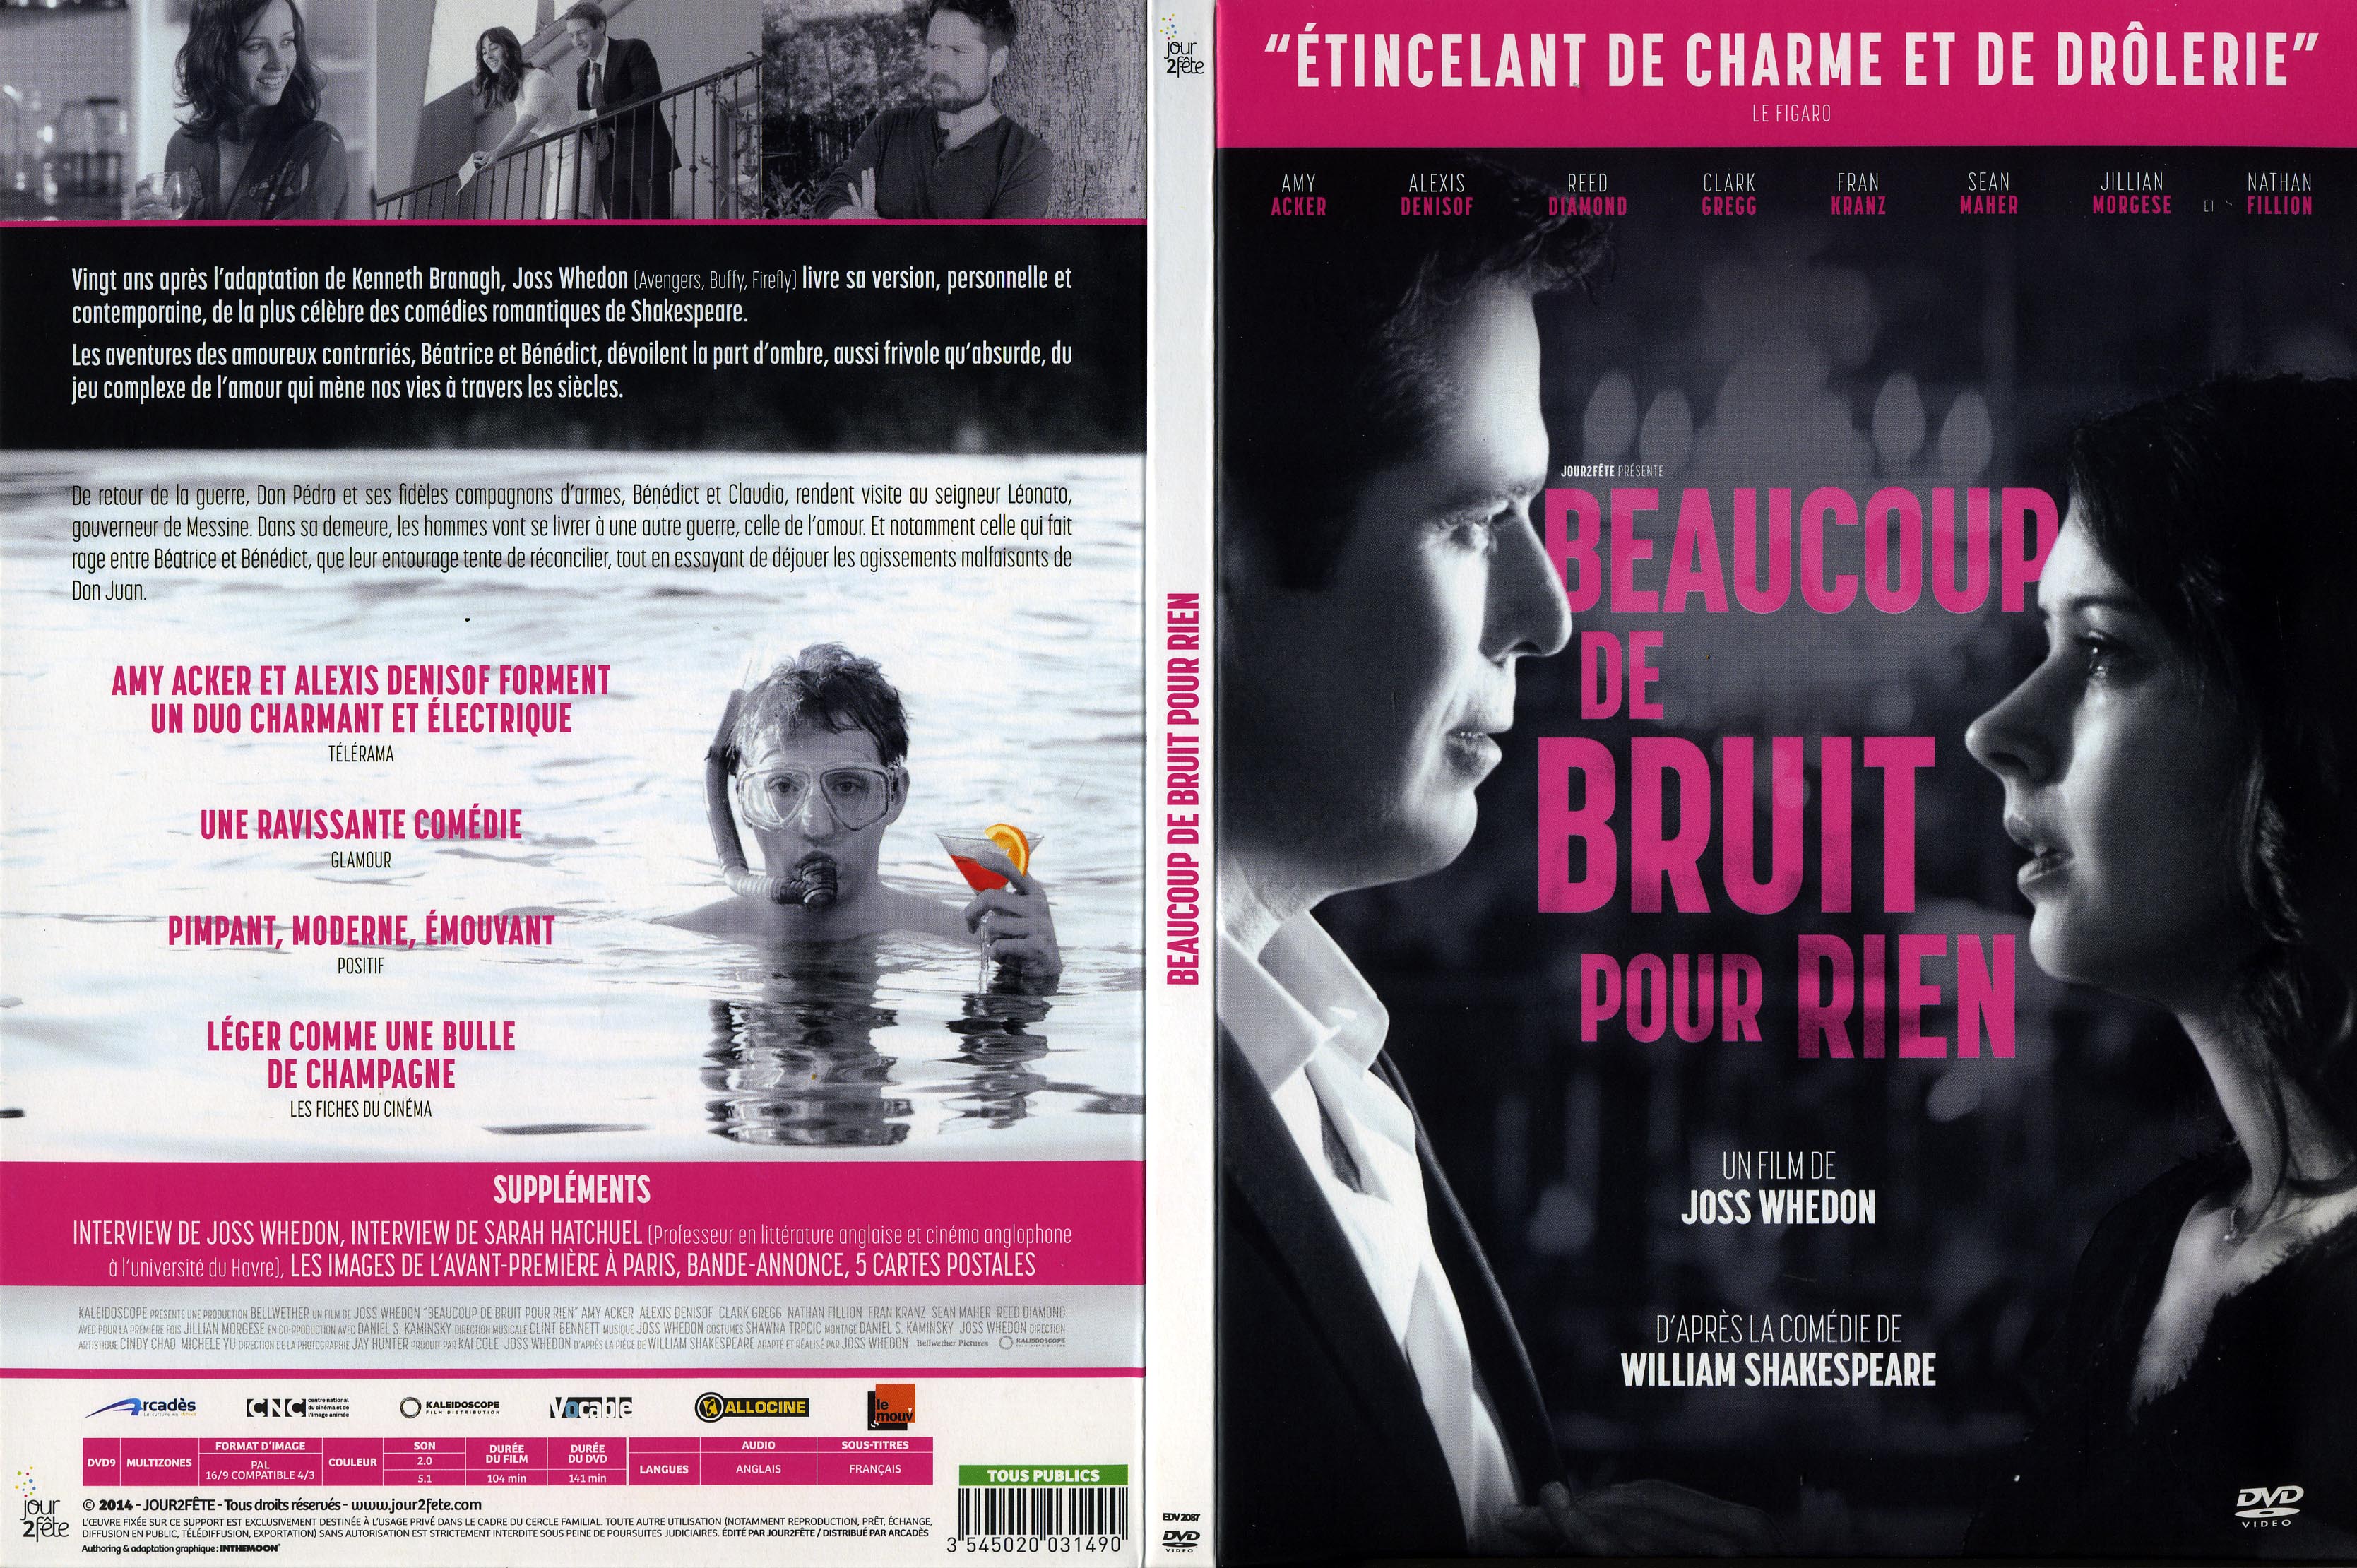 Jaquette DVD Beaucoup de bruit pour rien (2014)